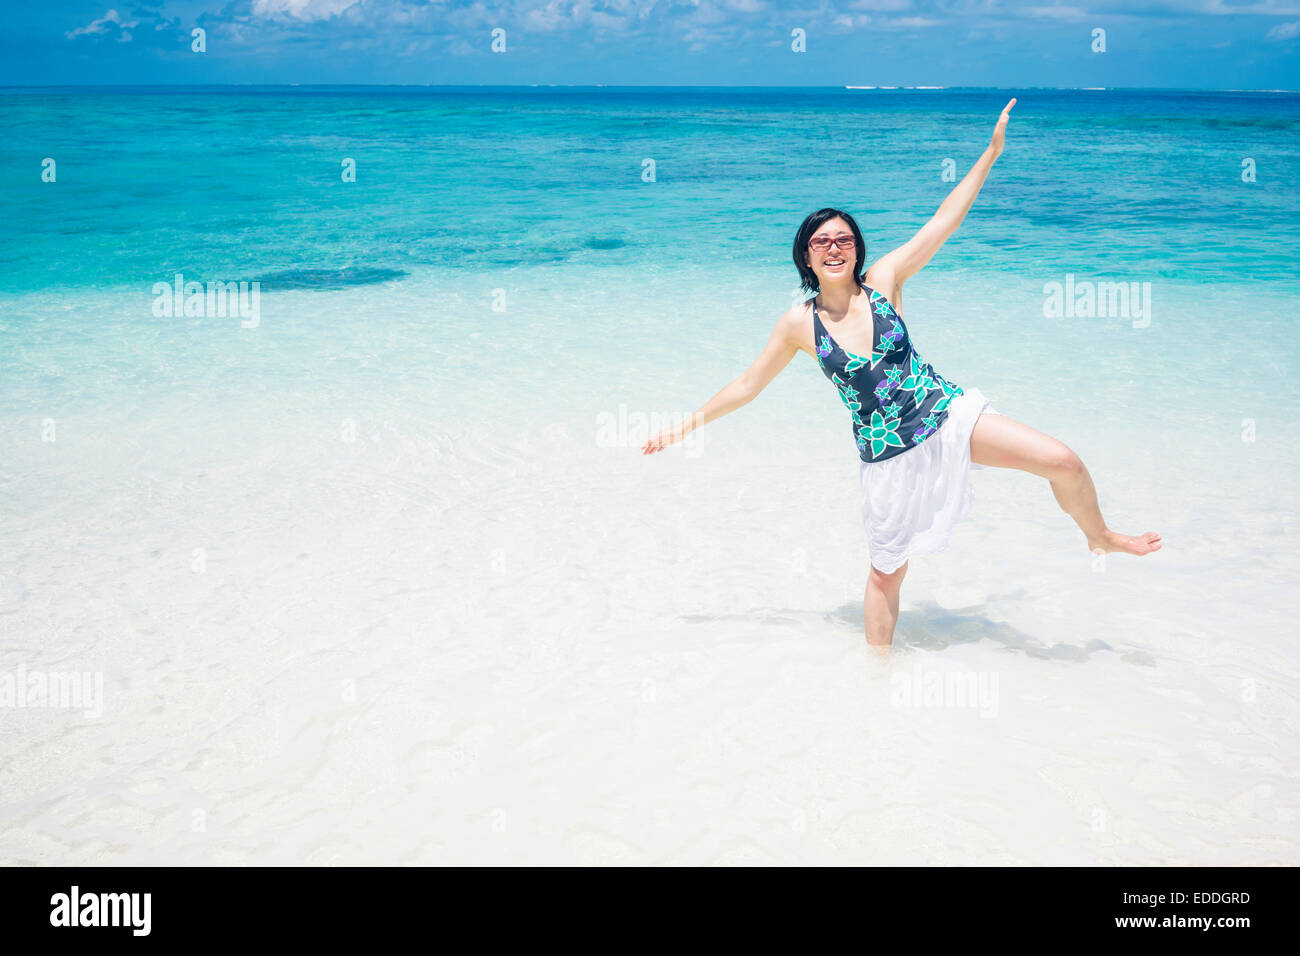 Malediven, Ari Atoll, junge Frau, die im Wasser auf einem Bein stehend Stockfoto